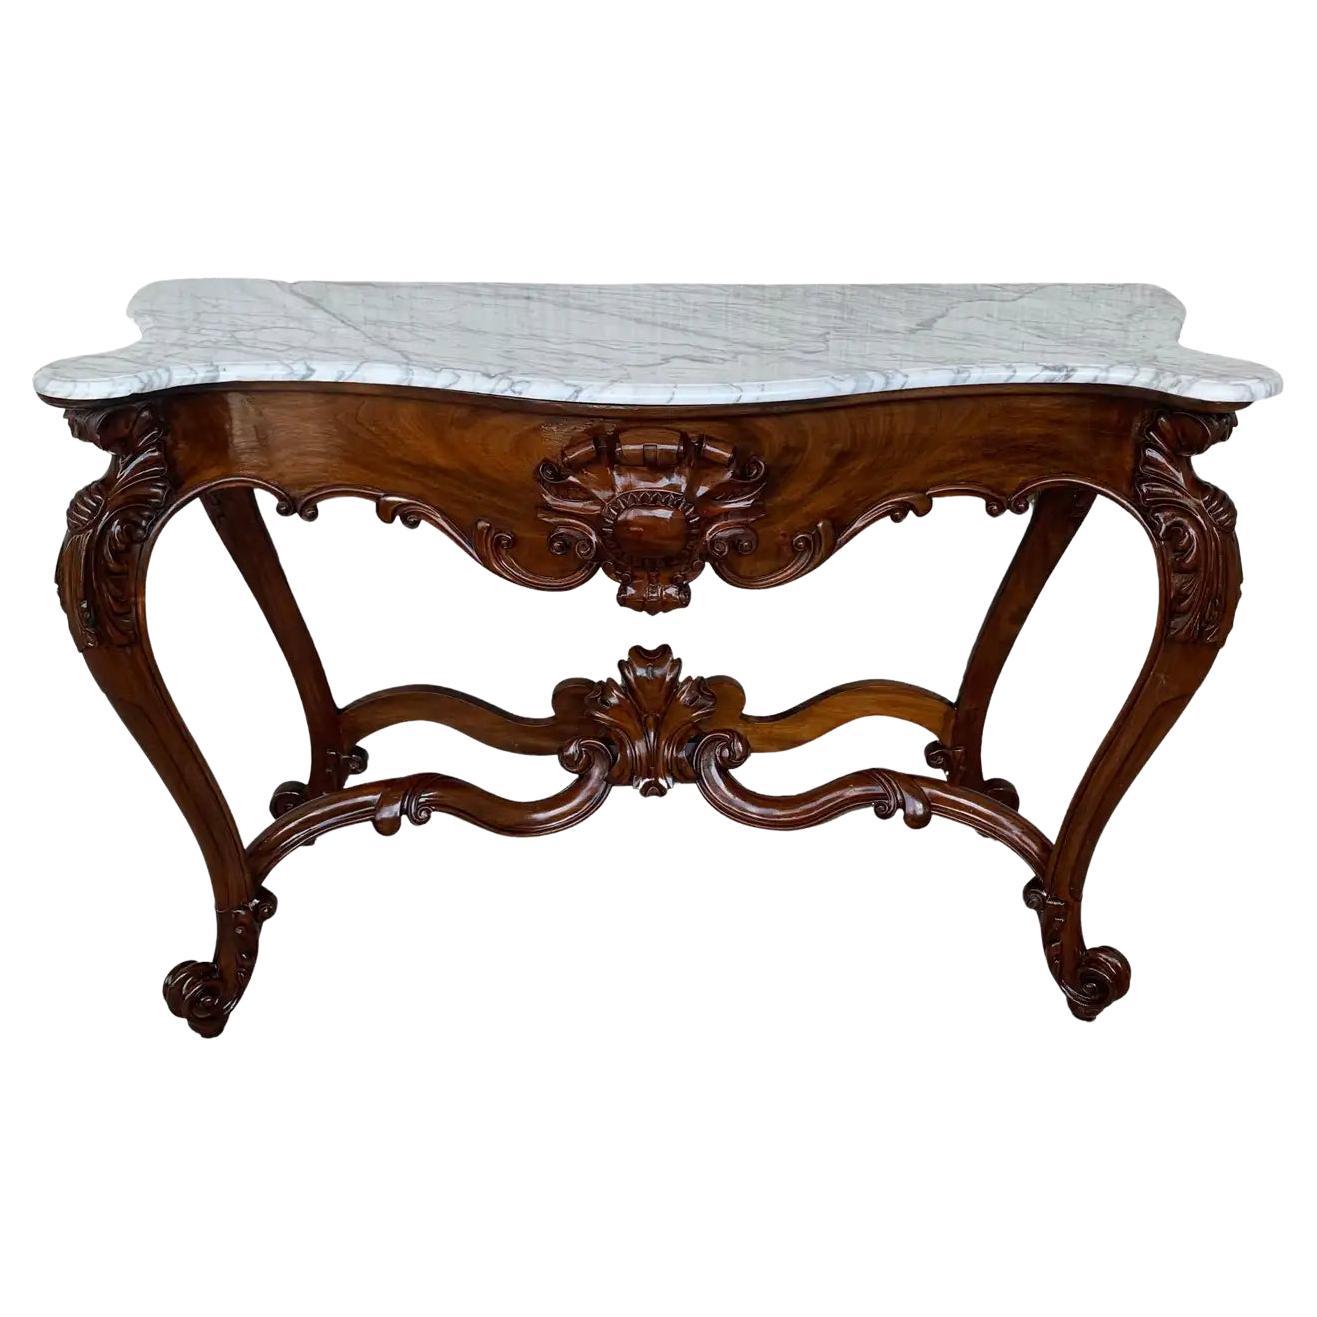 Grande table console de style Régence française en noyer sculpté avec plateau en marbre blanc '2 Avai'